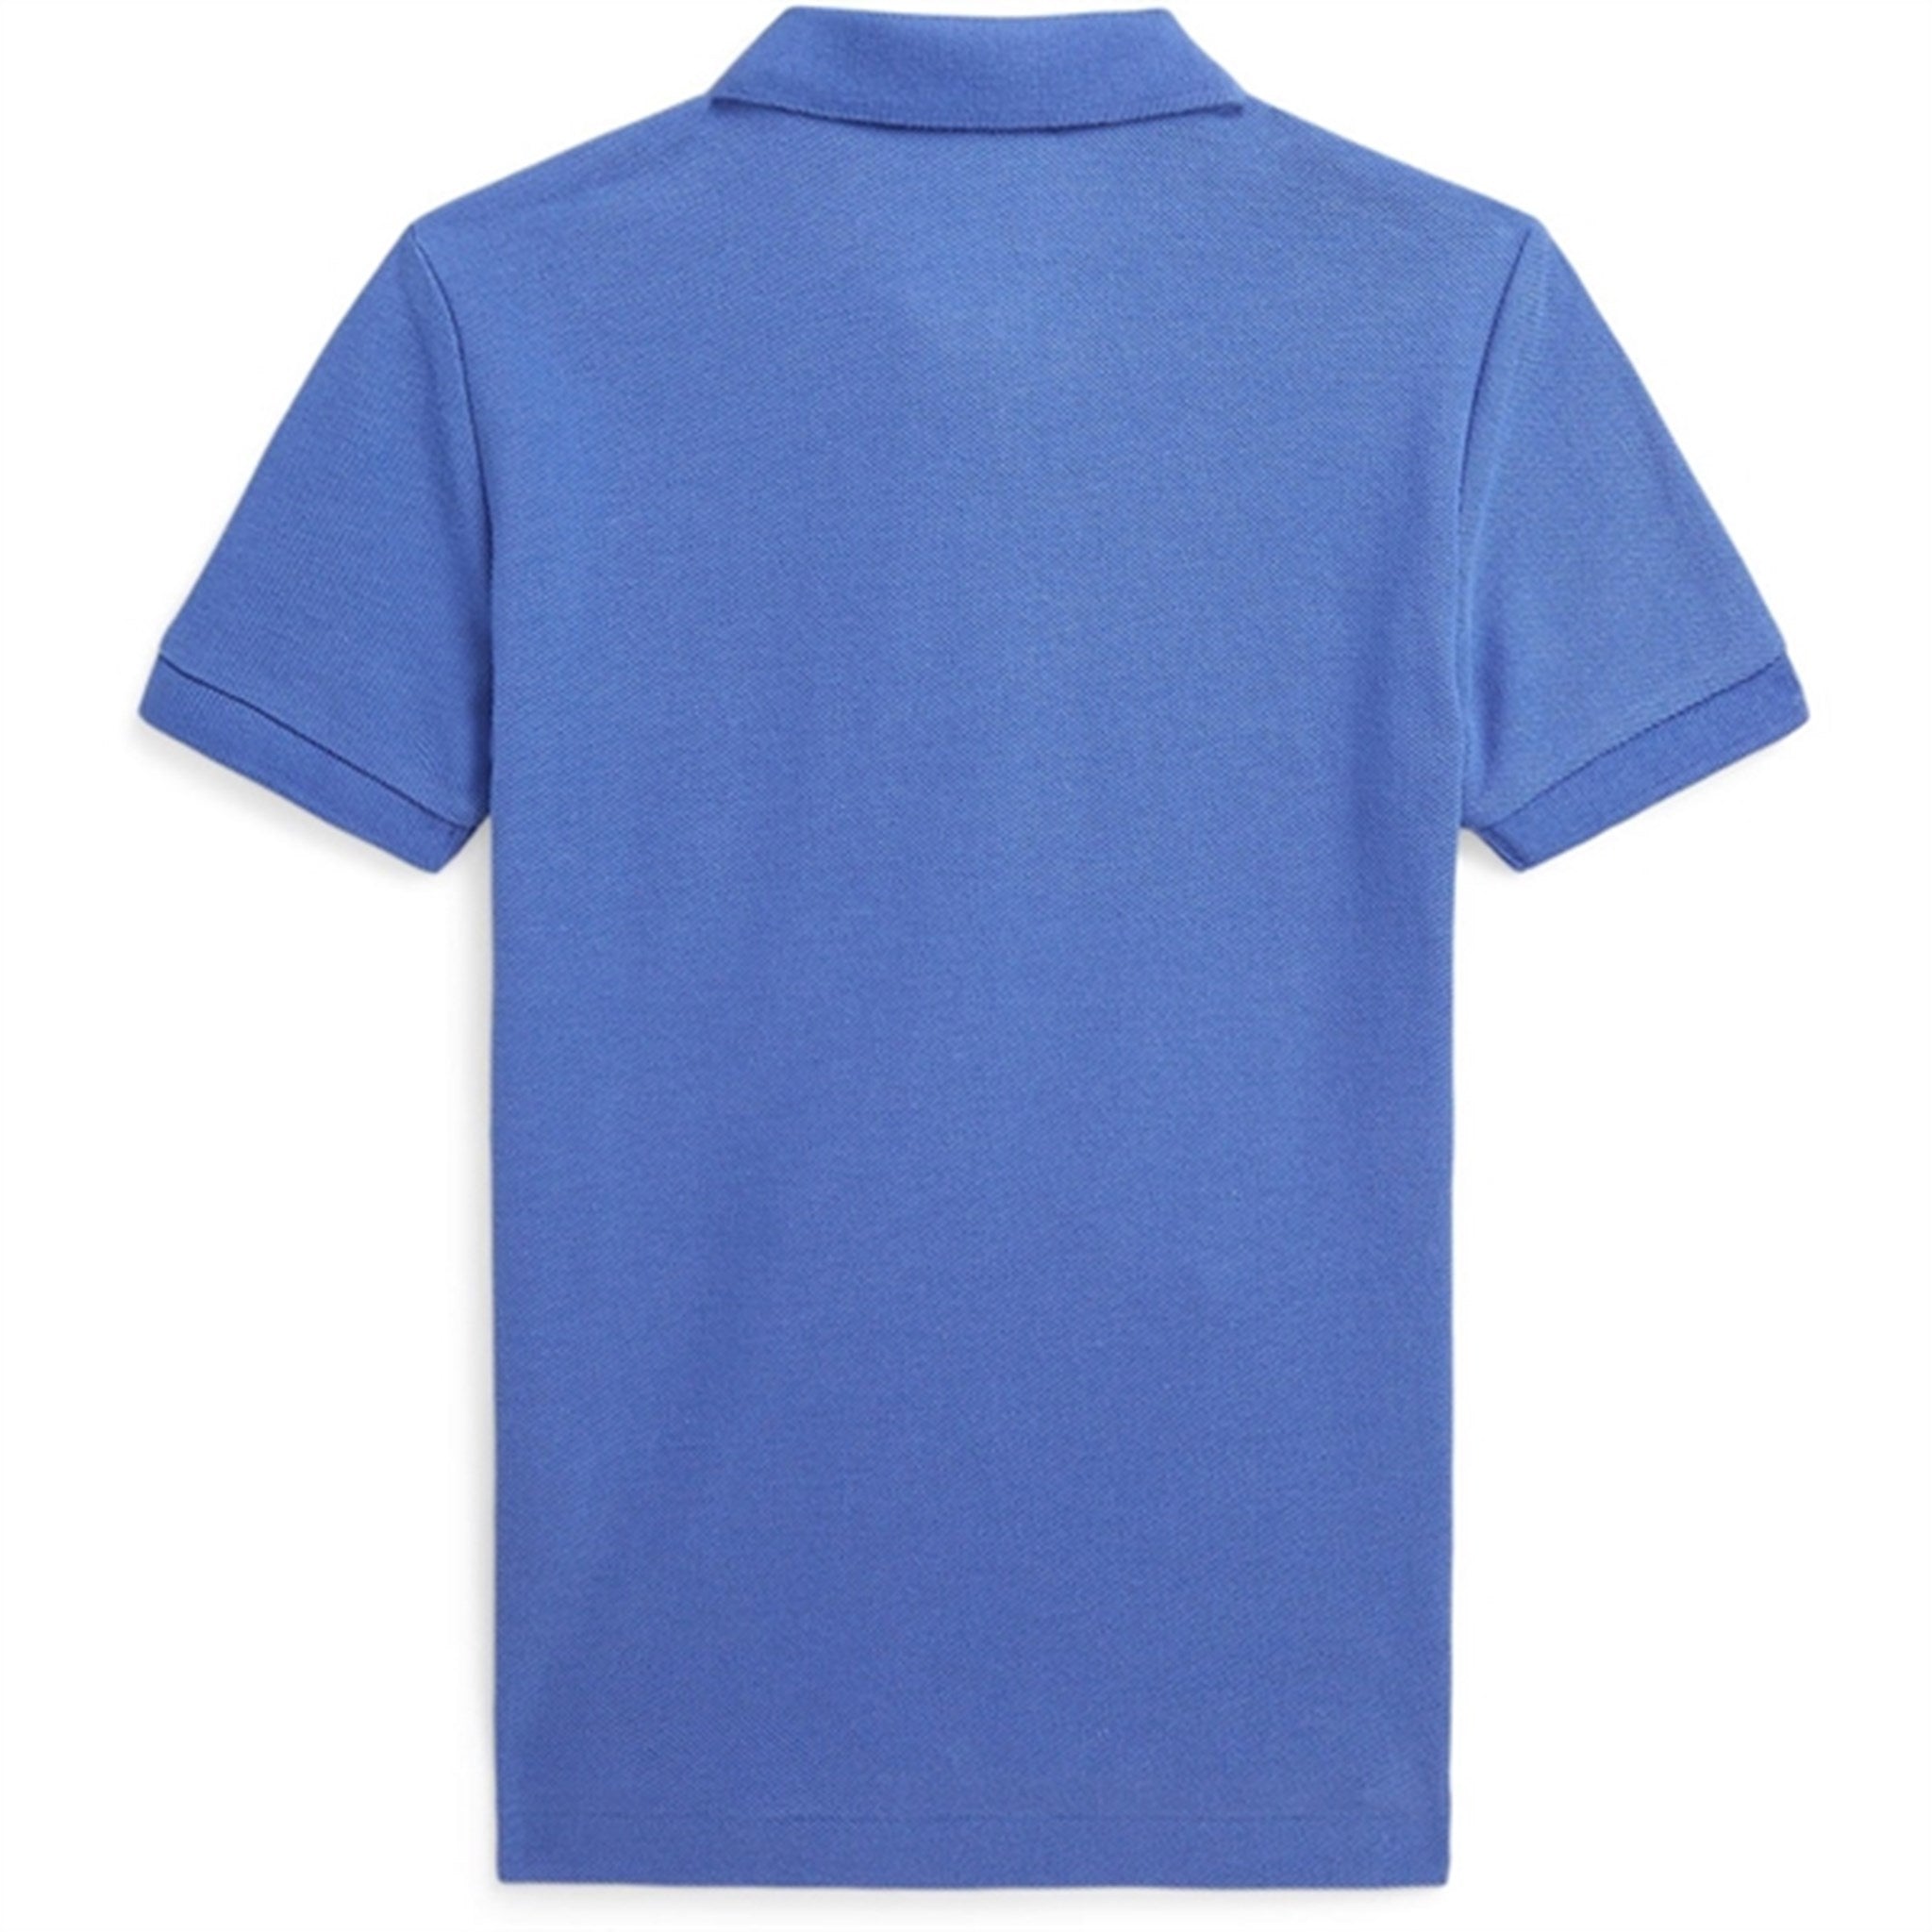 Polo Ralph Lauren Boys Polo Shirt Liberty Blue 2